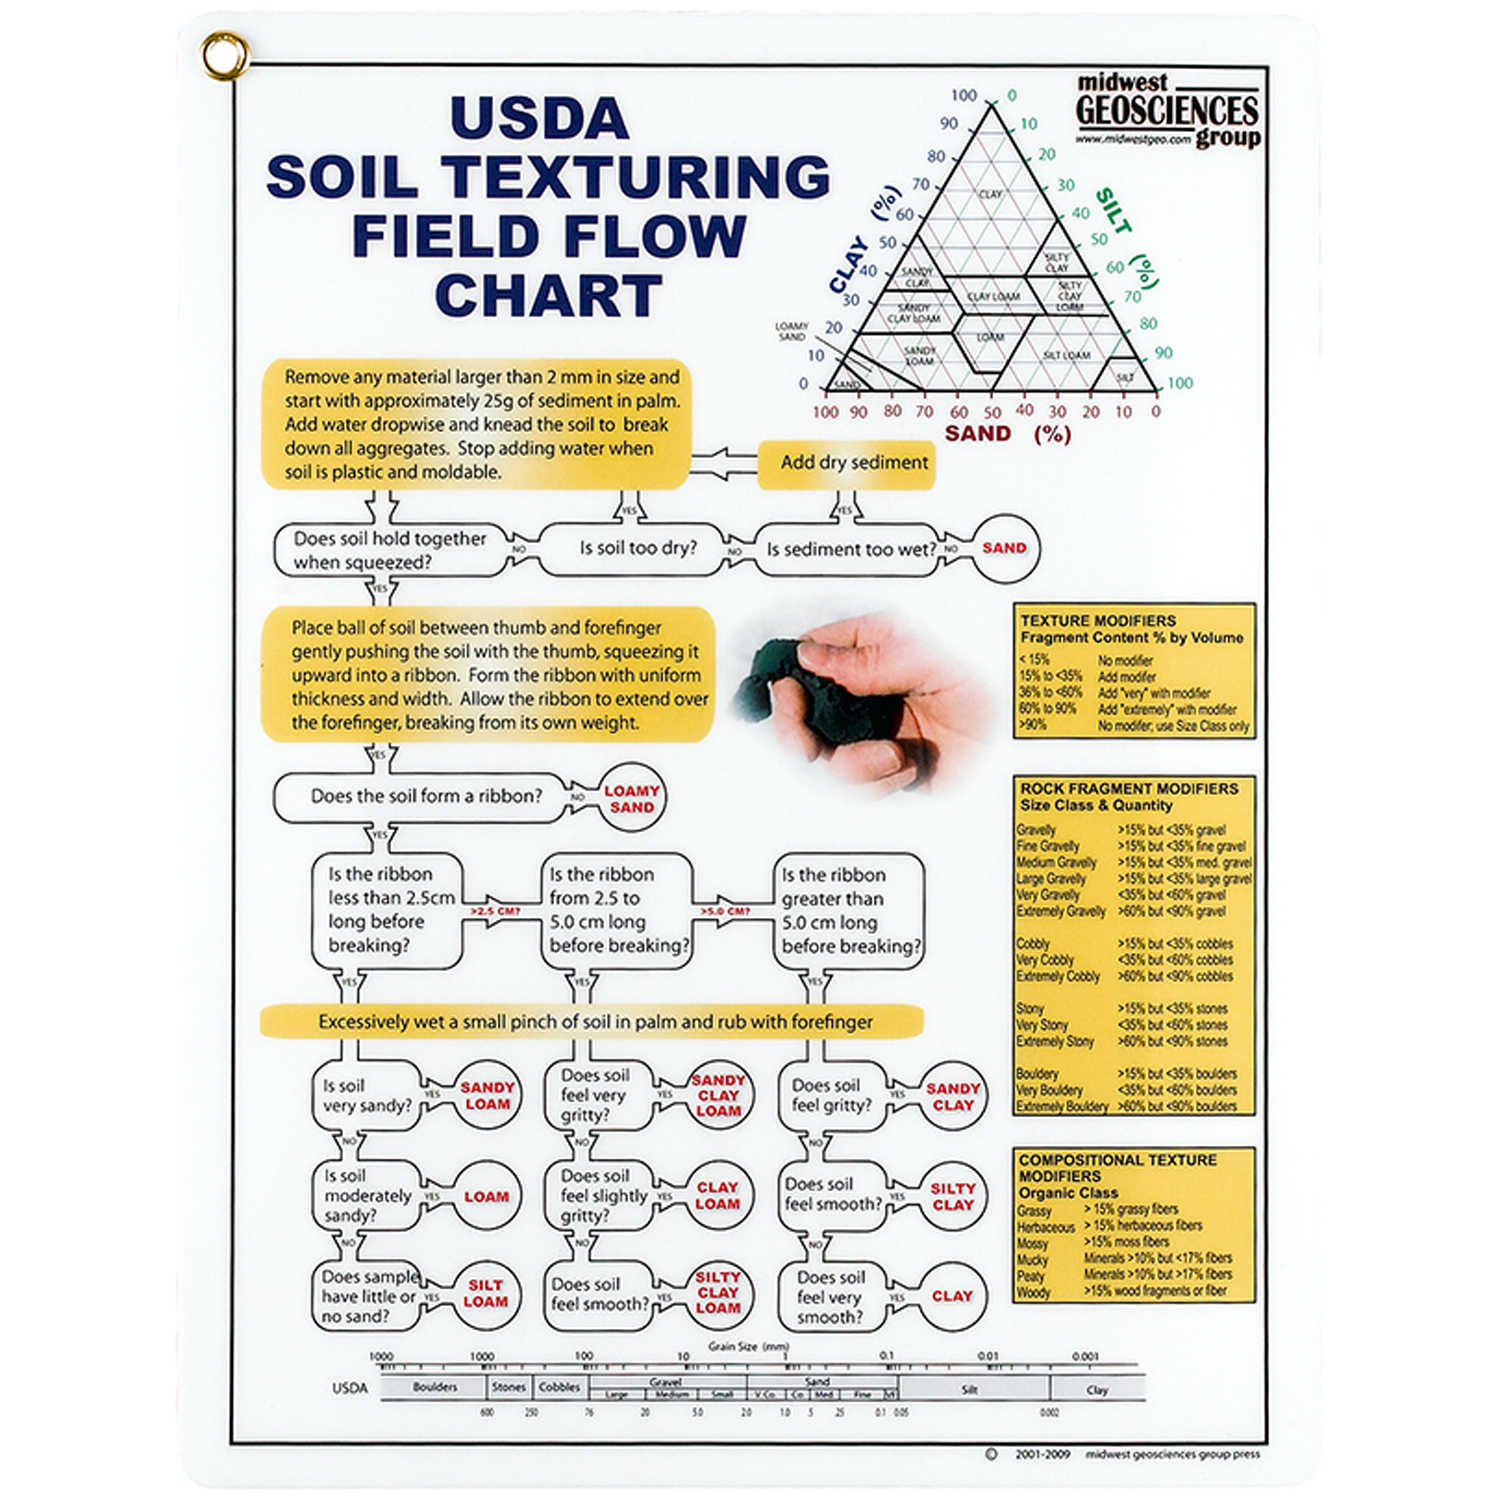 Soil Chart